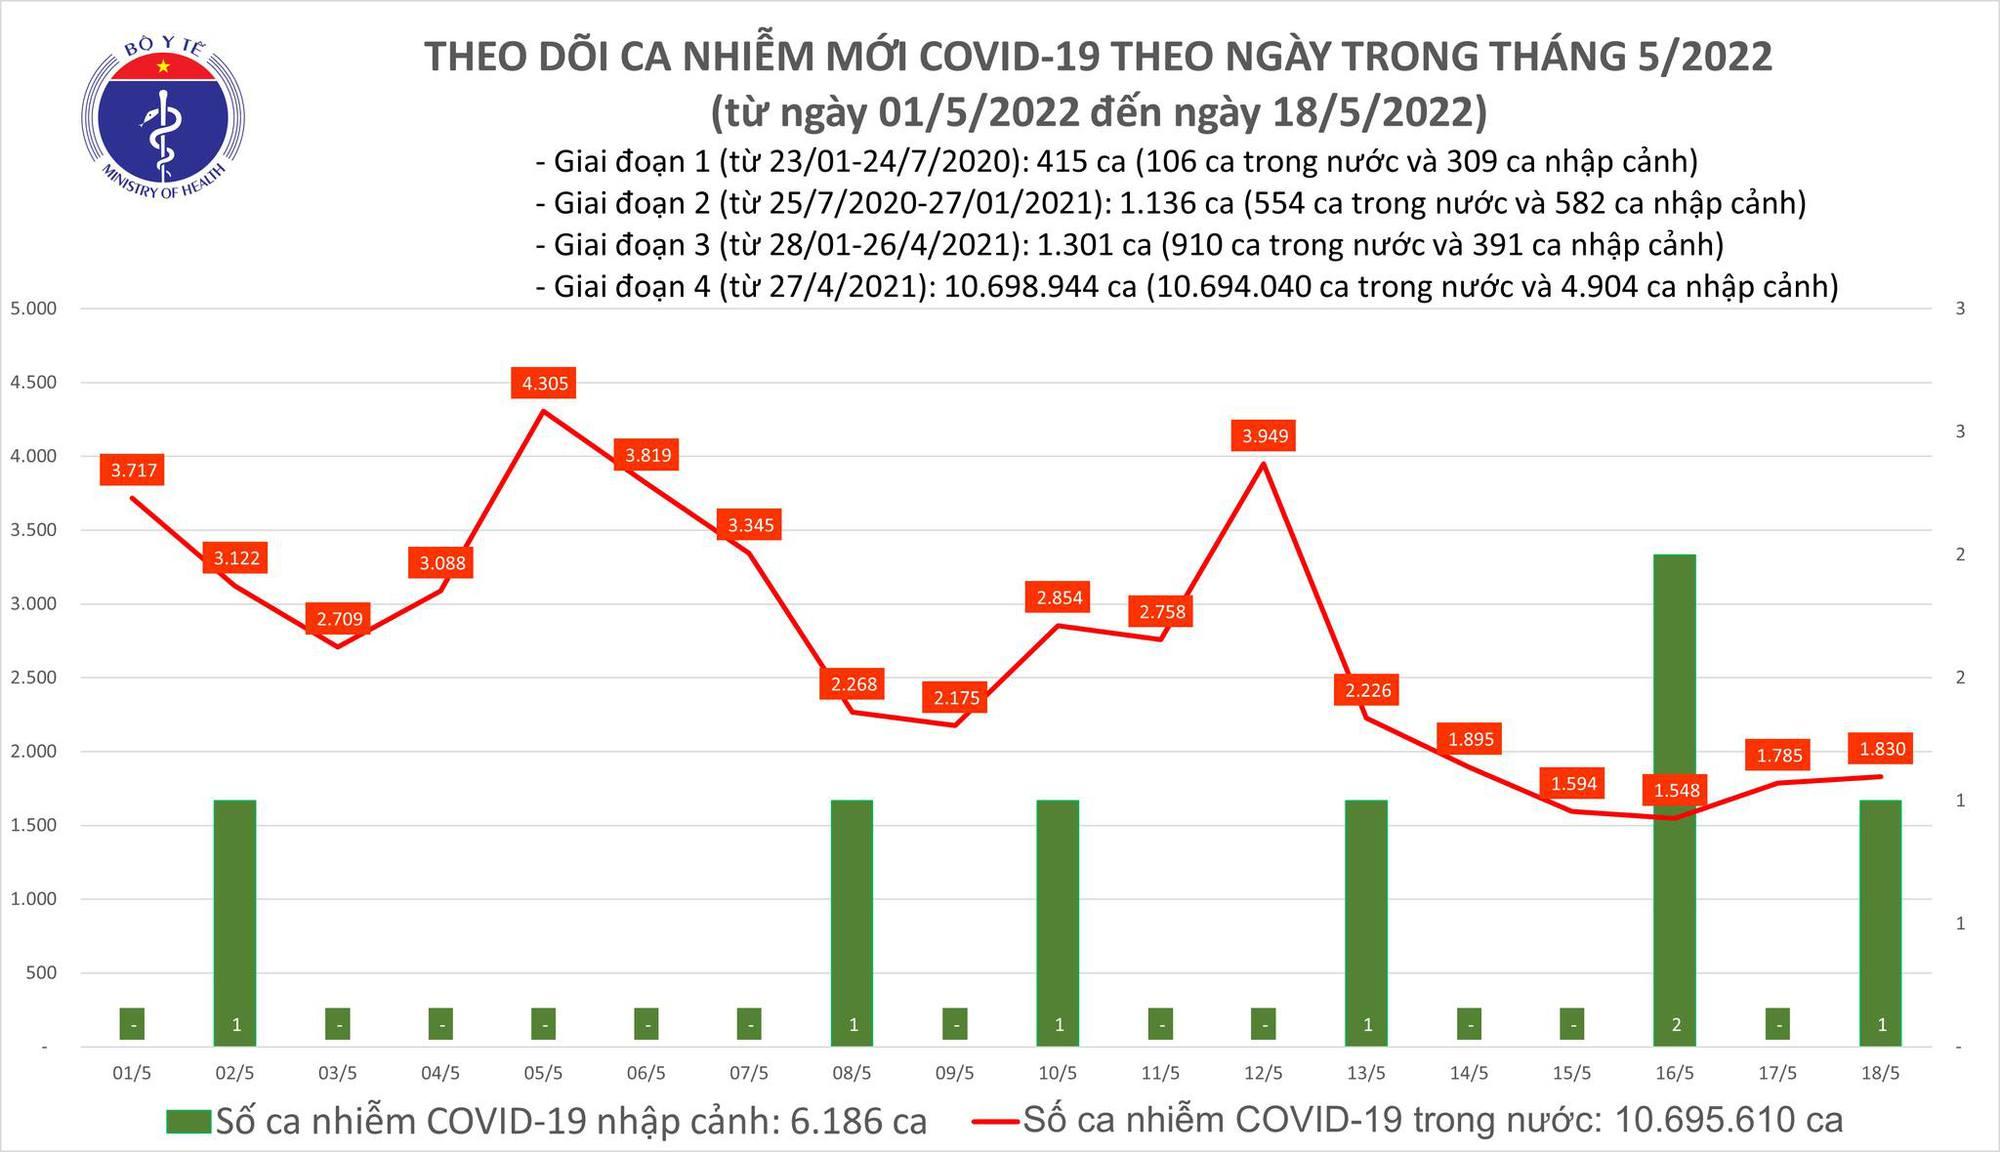 Ngày 18/5: Có 1.831 ca COVID-19, số F0 khỏi bệnh cao gần gấp 5 lần mắc mới - Ảnh 1.